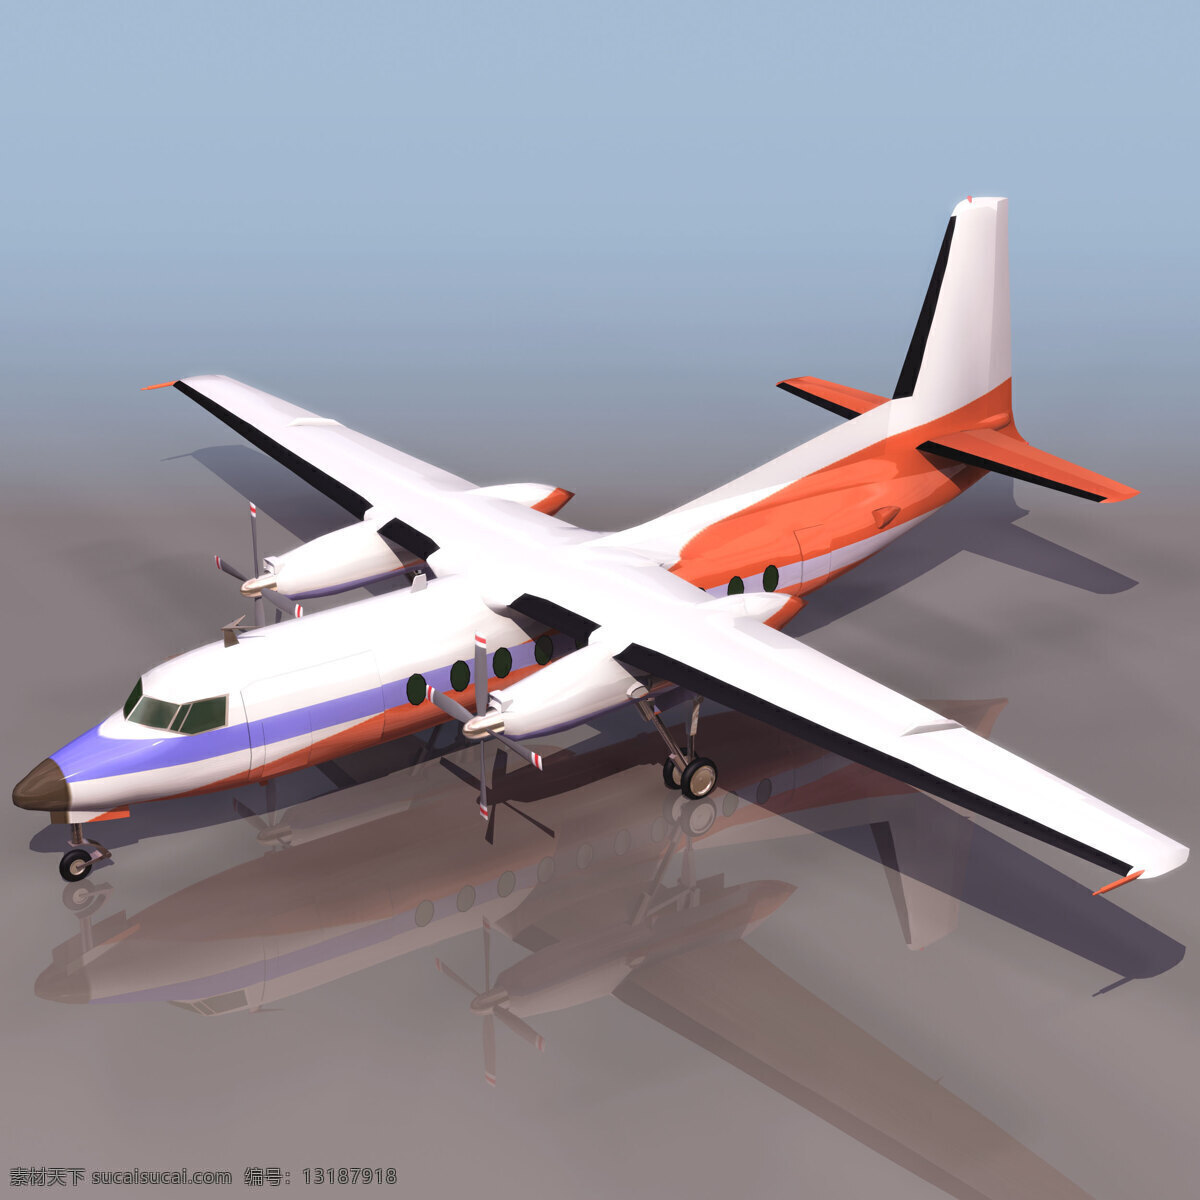 飞机模型 foker foker27 民用飞机 3d模型素材 电器模型